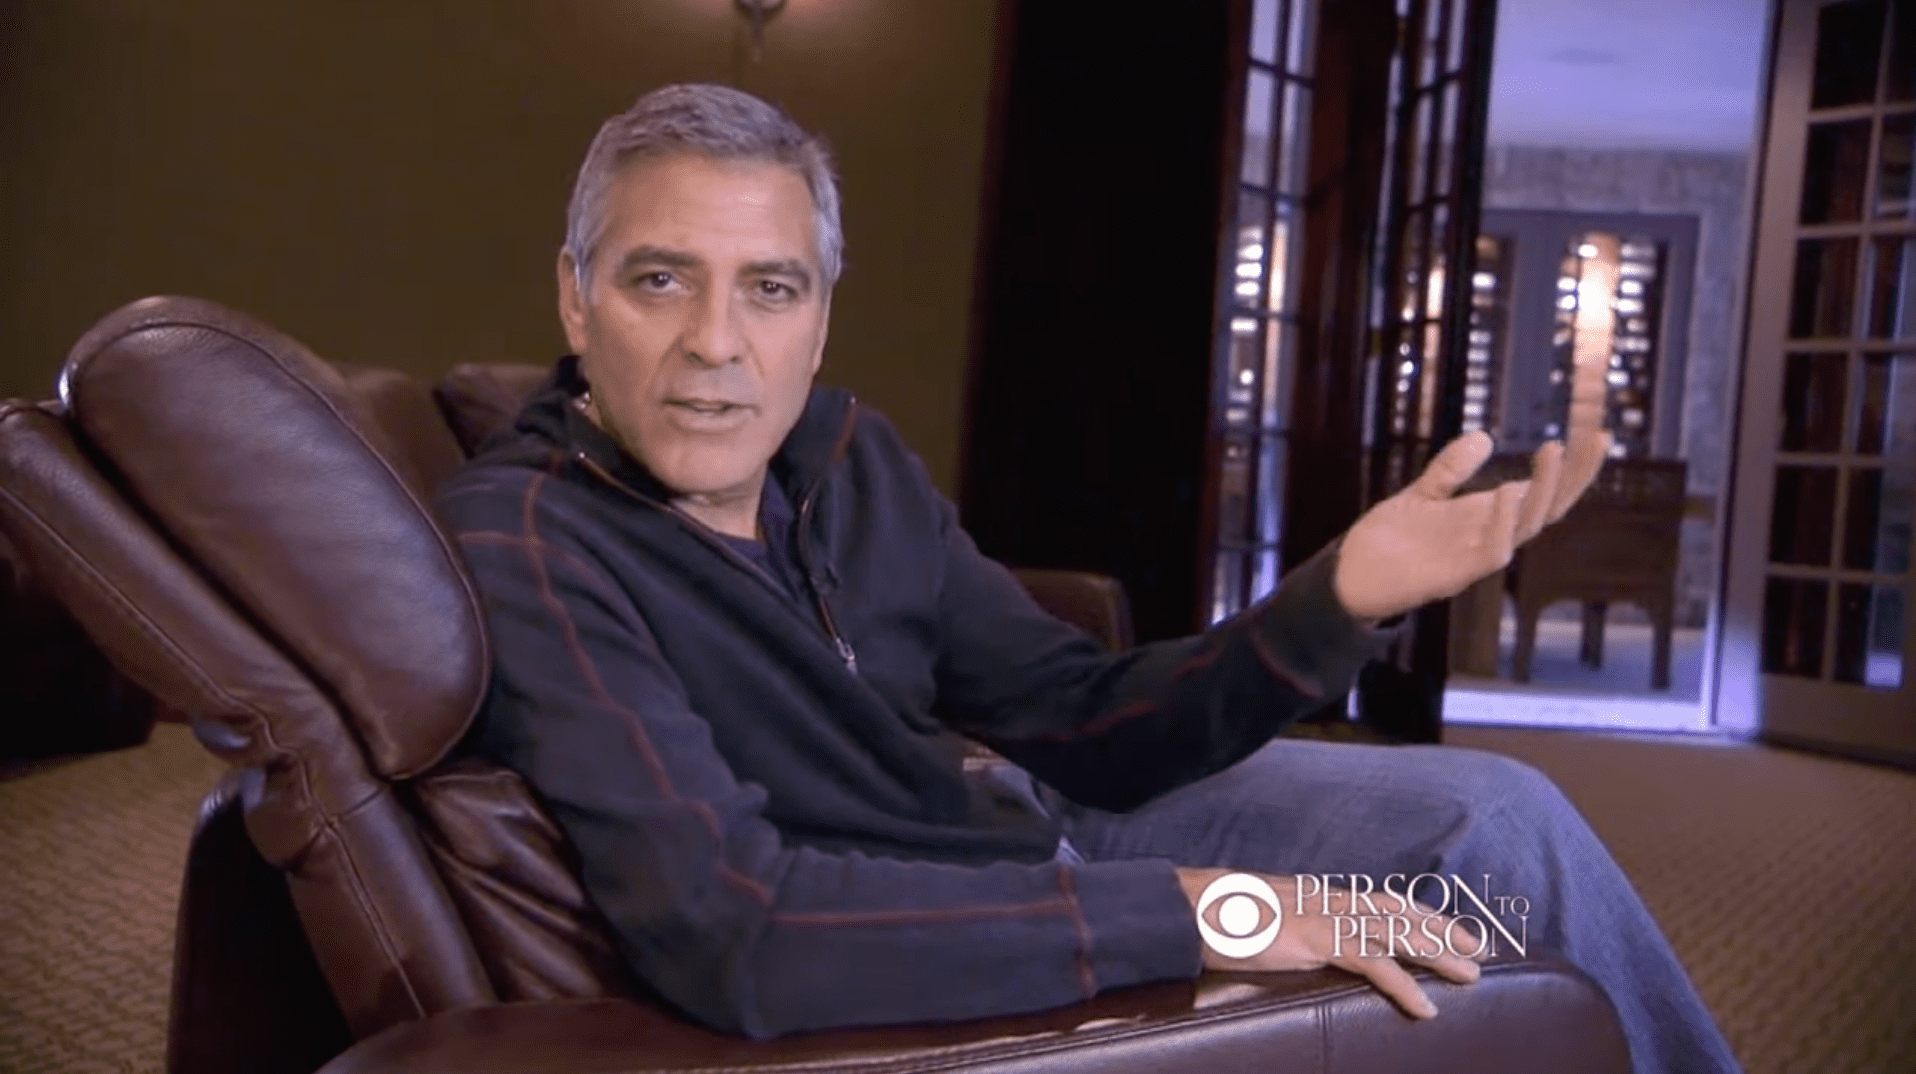 Una parte de la casa de George Clooney en Los Ángeles grabada en "Person to Person" de "CBS News", el 8 de febrero de 2012. | Foto: YouTube/CBS News